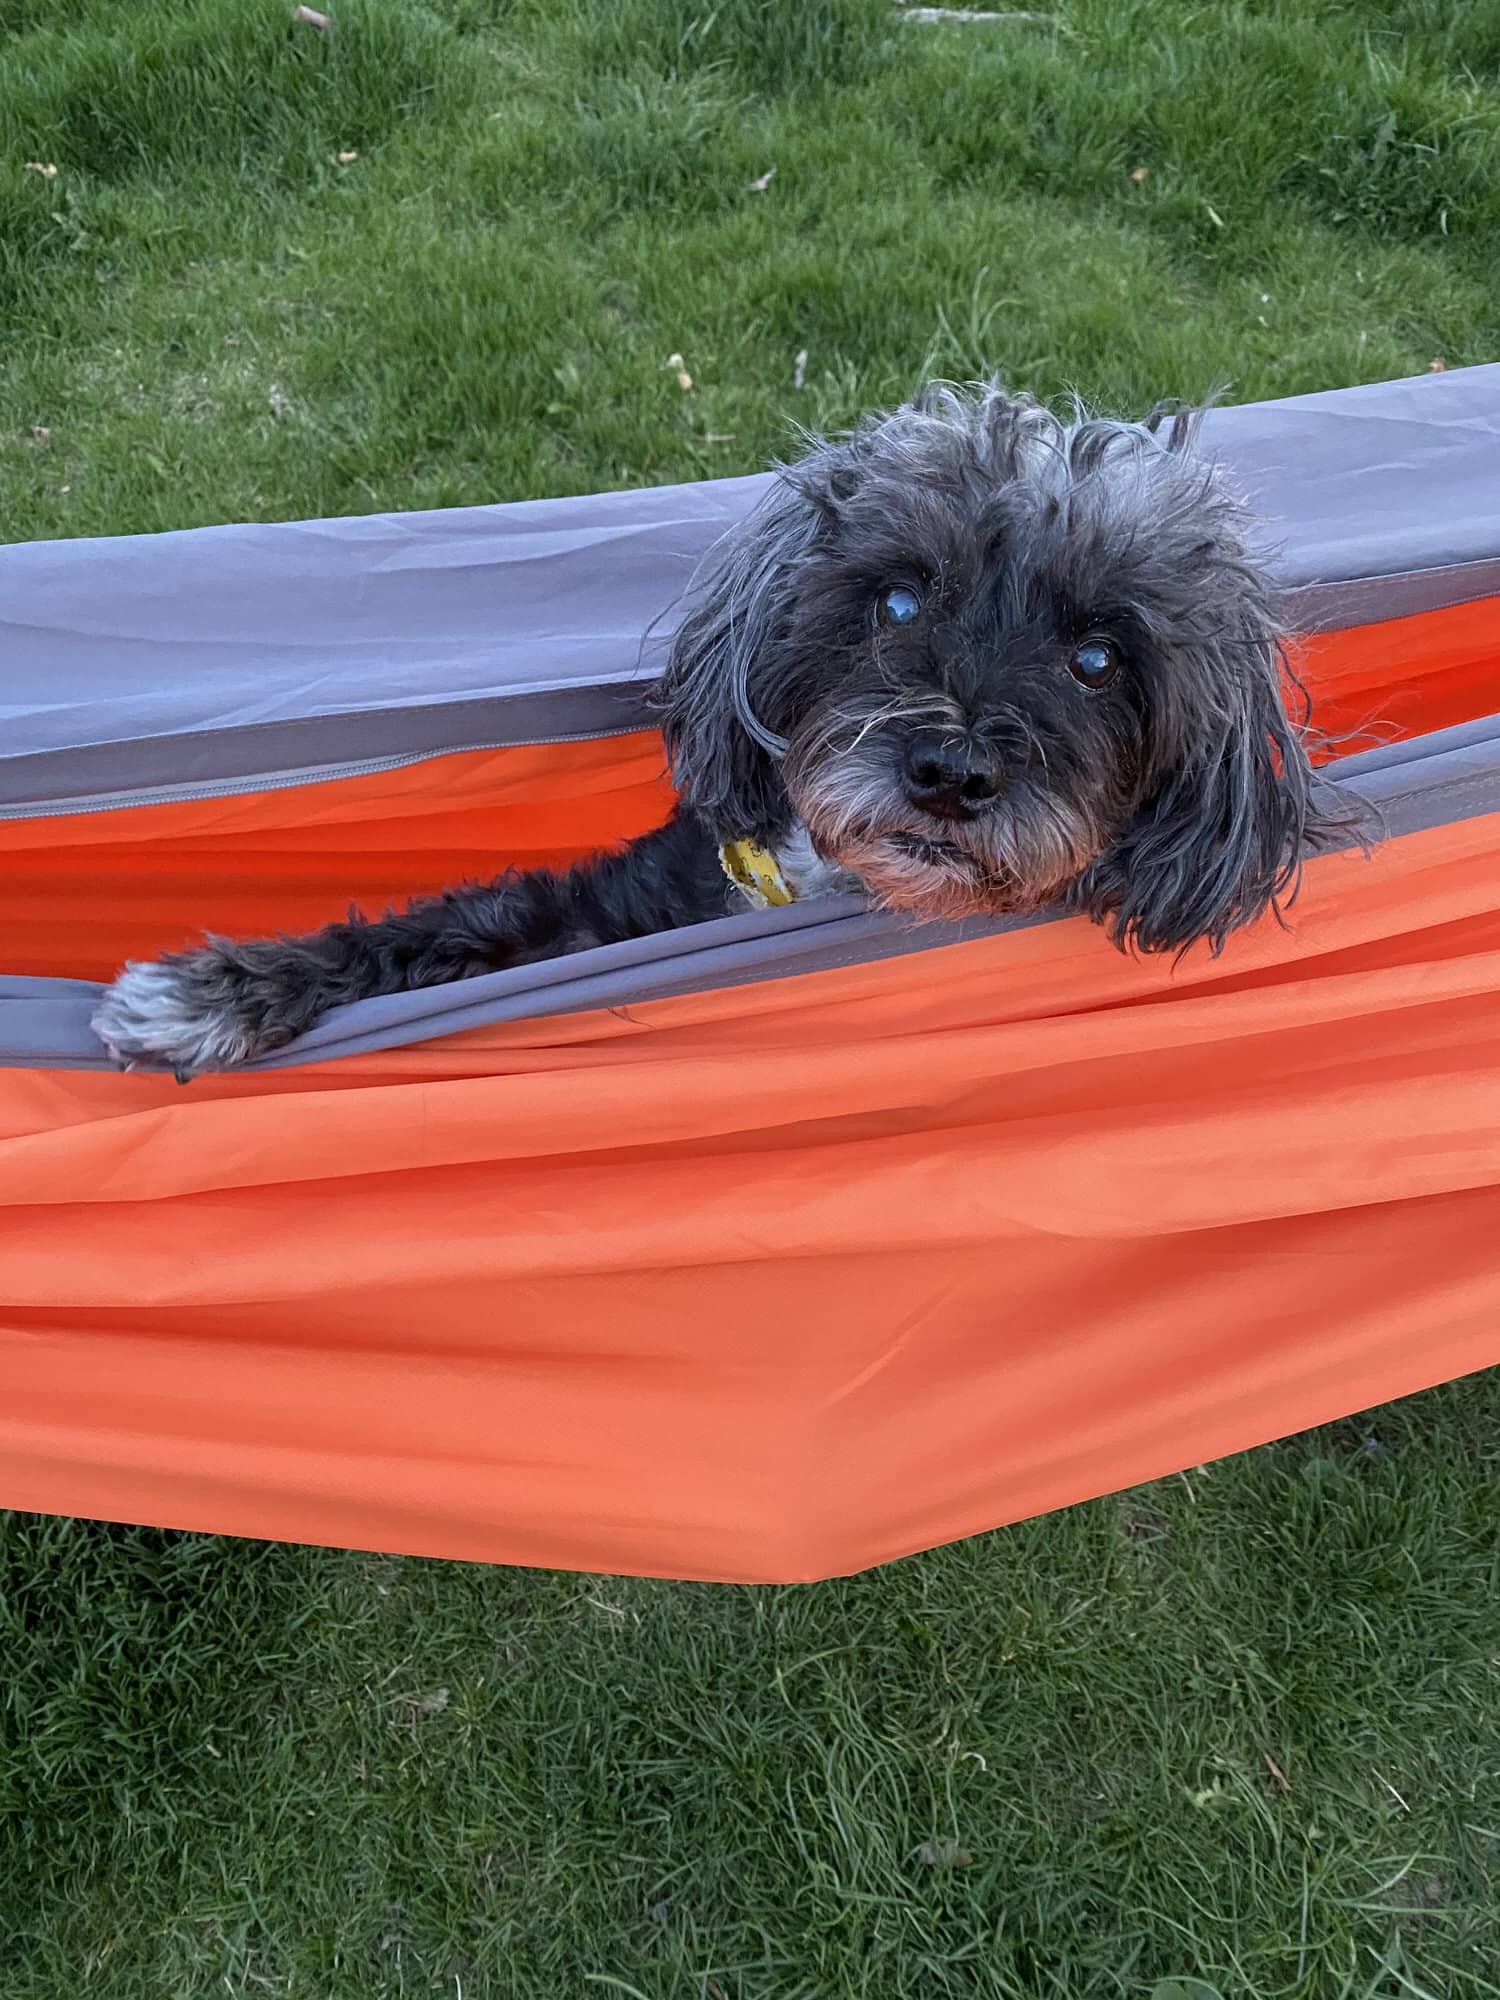 A dog is sitting in a hammock.